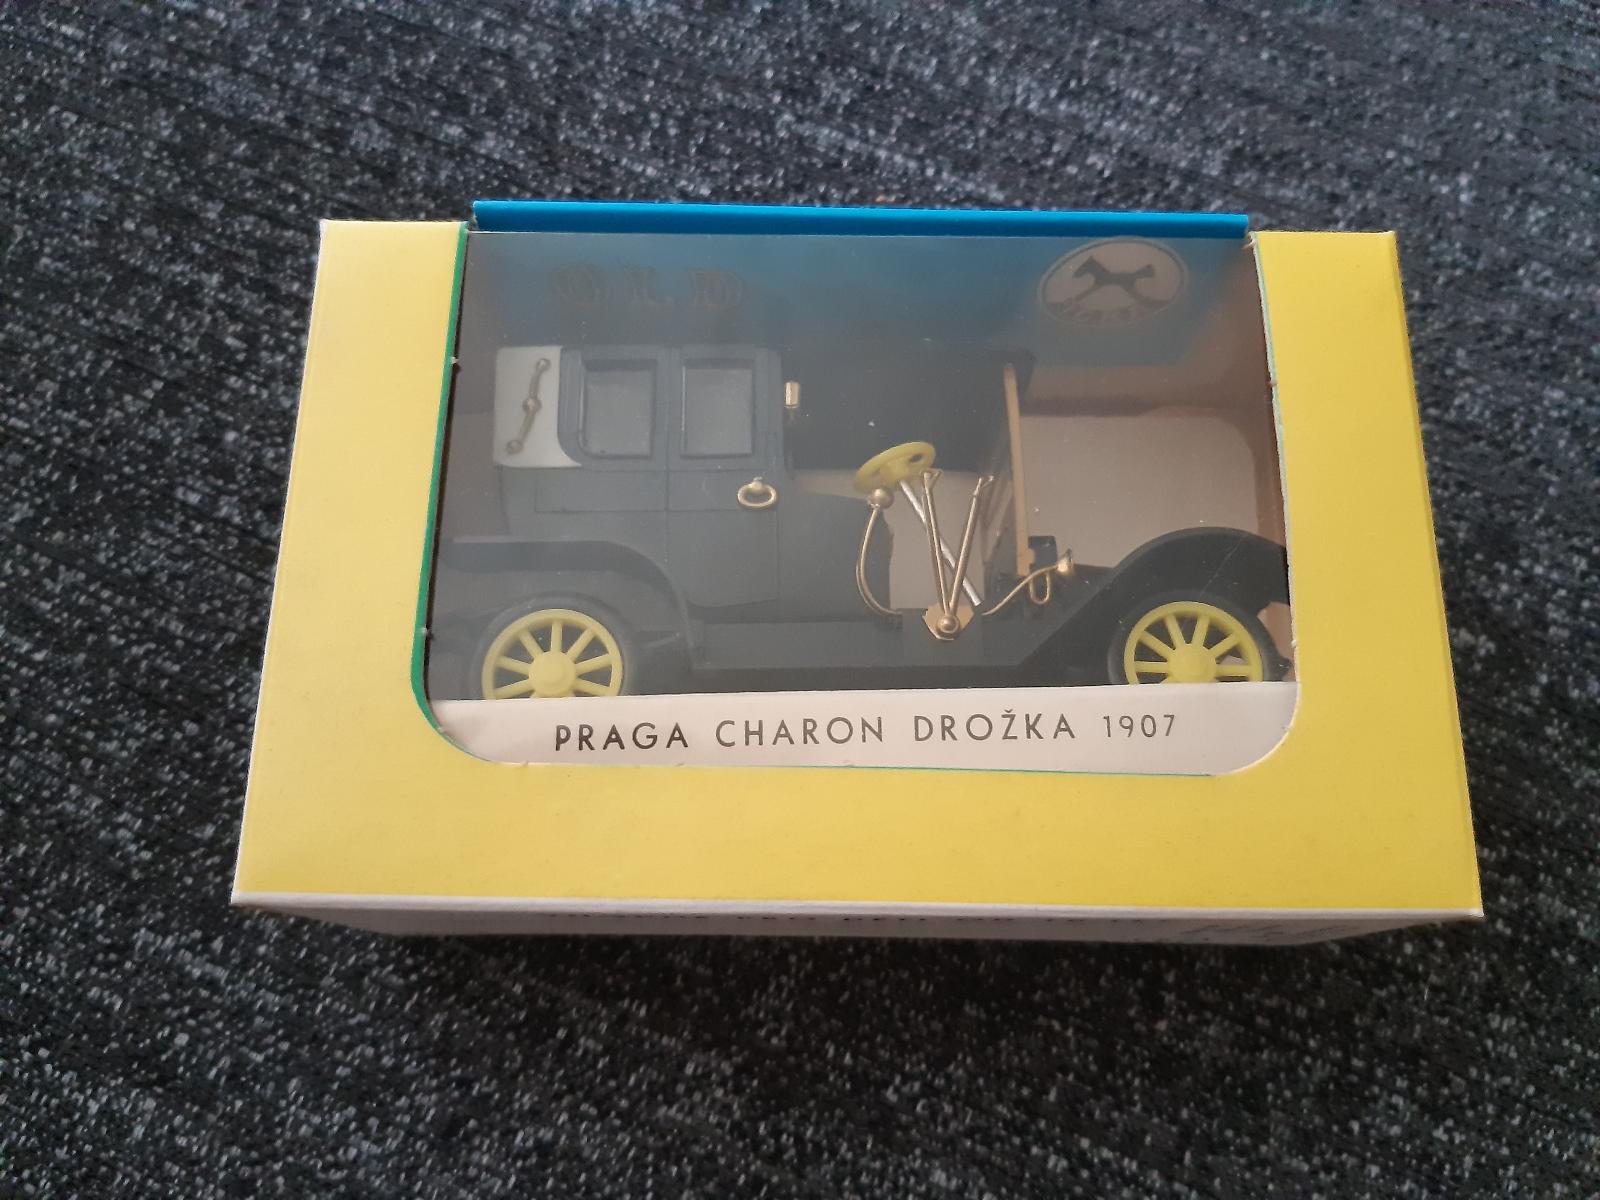 OZ MODELY AUT-PRAGA CHARON DROŽKA 1907 IGRA PRAHA RARE V PÔV.KRAB. - Modely automobilov